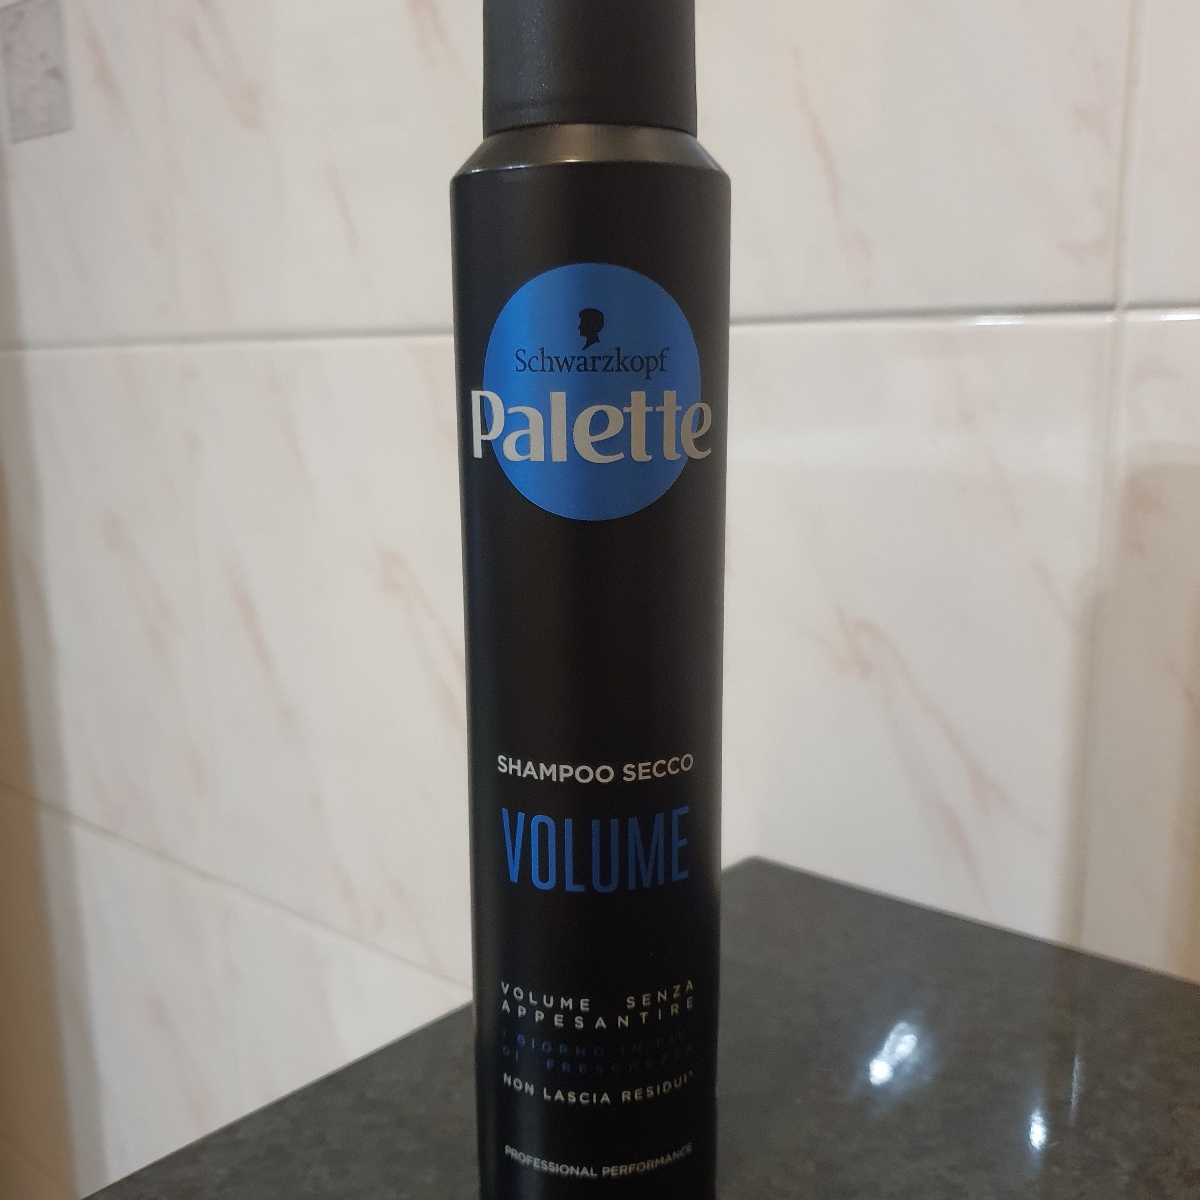 Palette Shampoo Secco Volume Reviews | abillion